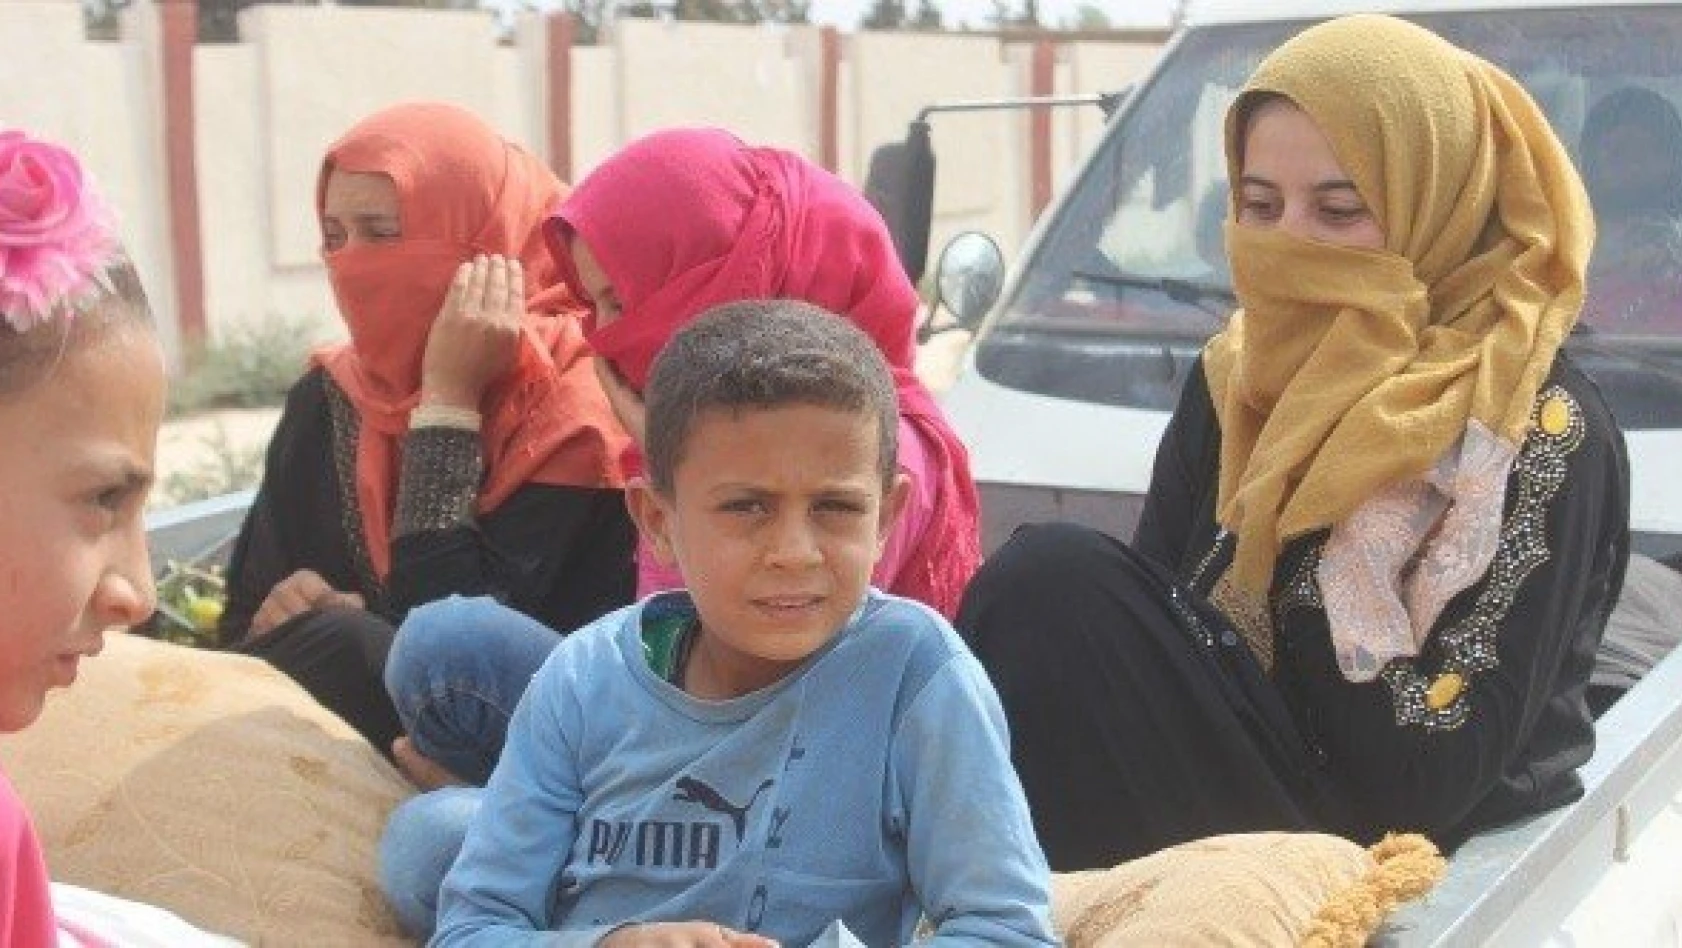 TSK'nın teröristlerden aldığı Tel Abyad'da siviller evlerine dönmeye başladı